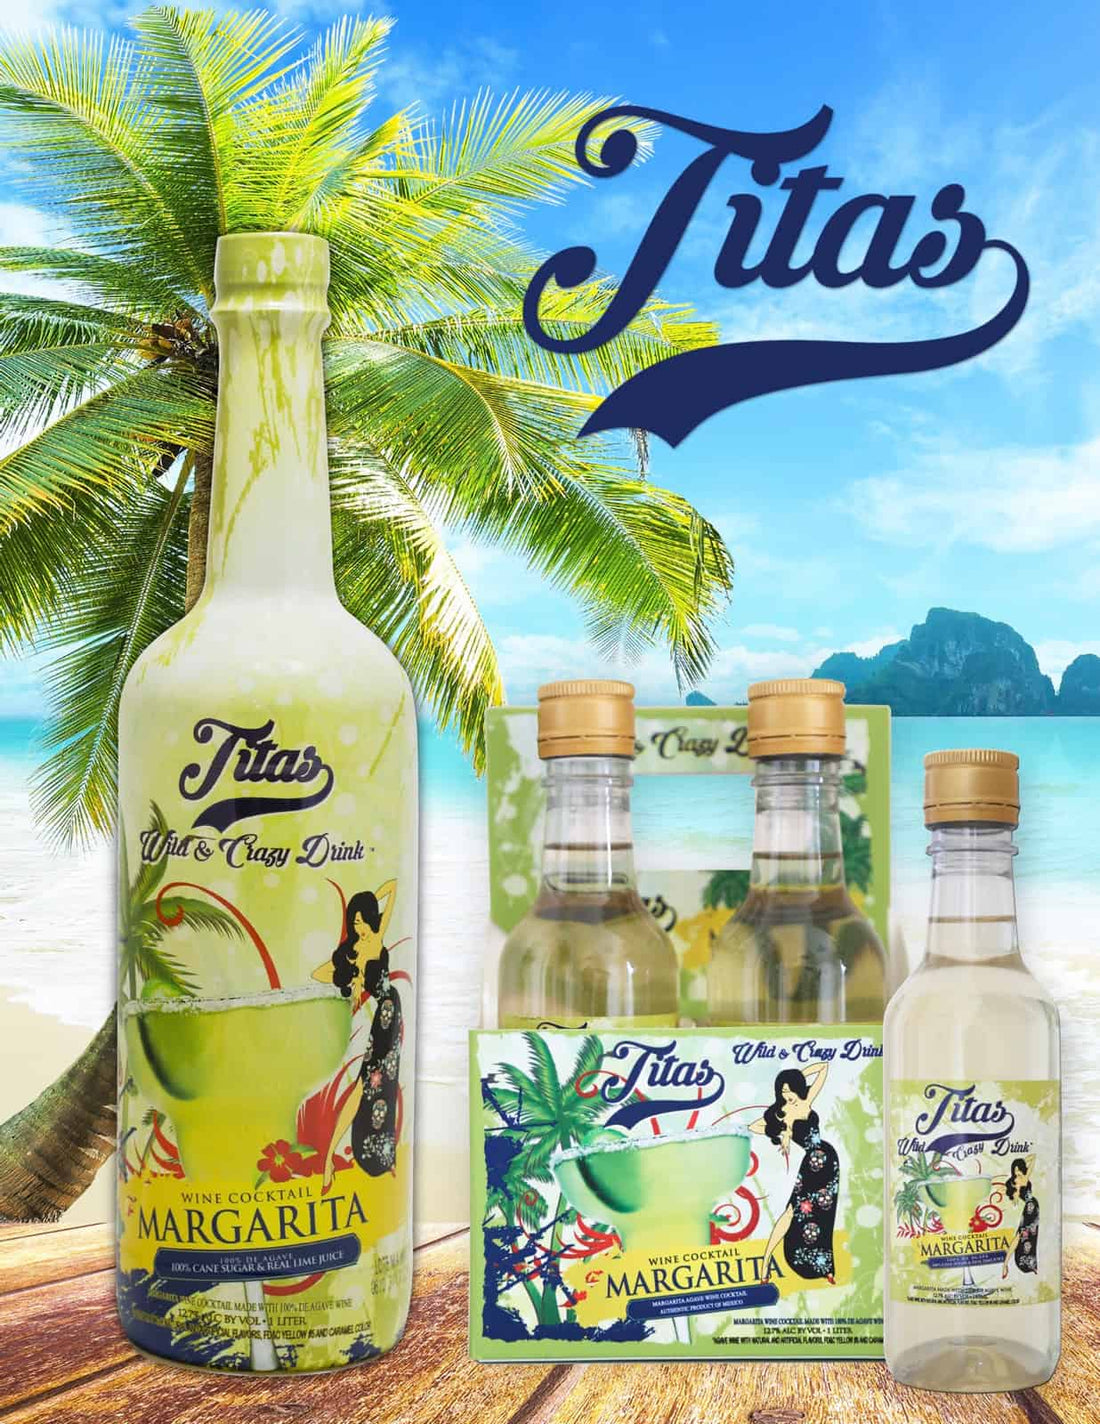 Titas Margarita is now on Global Fine Wines